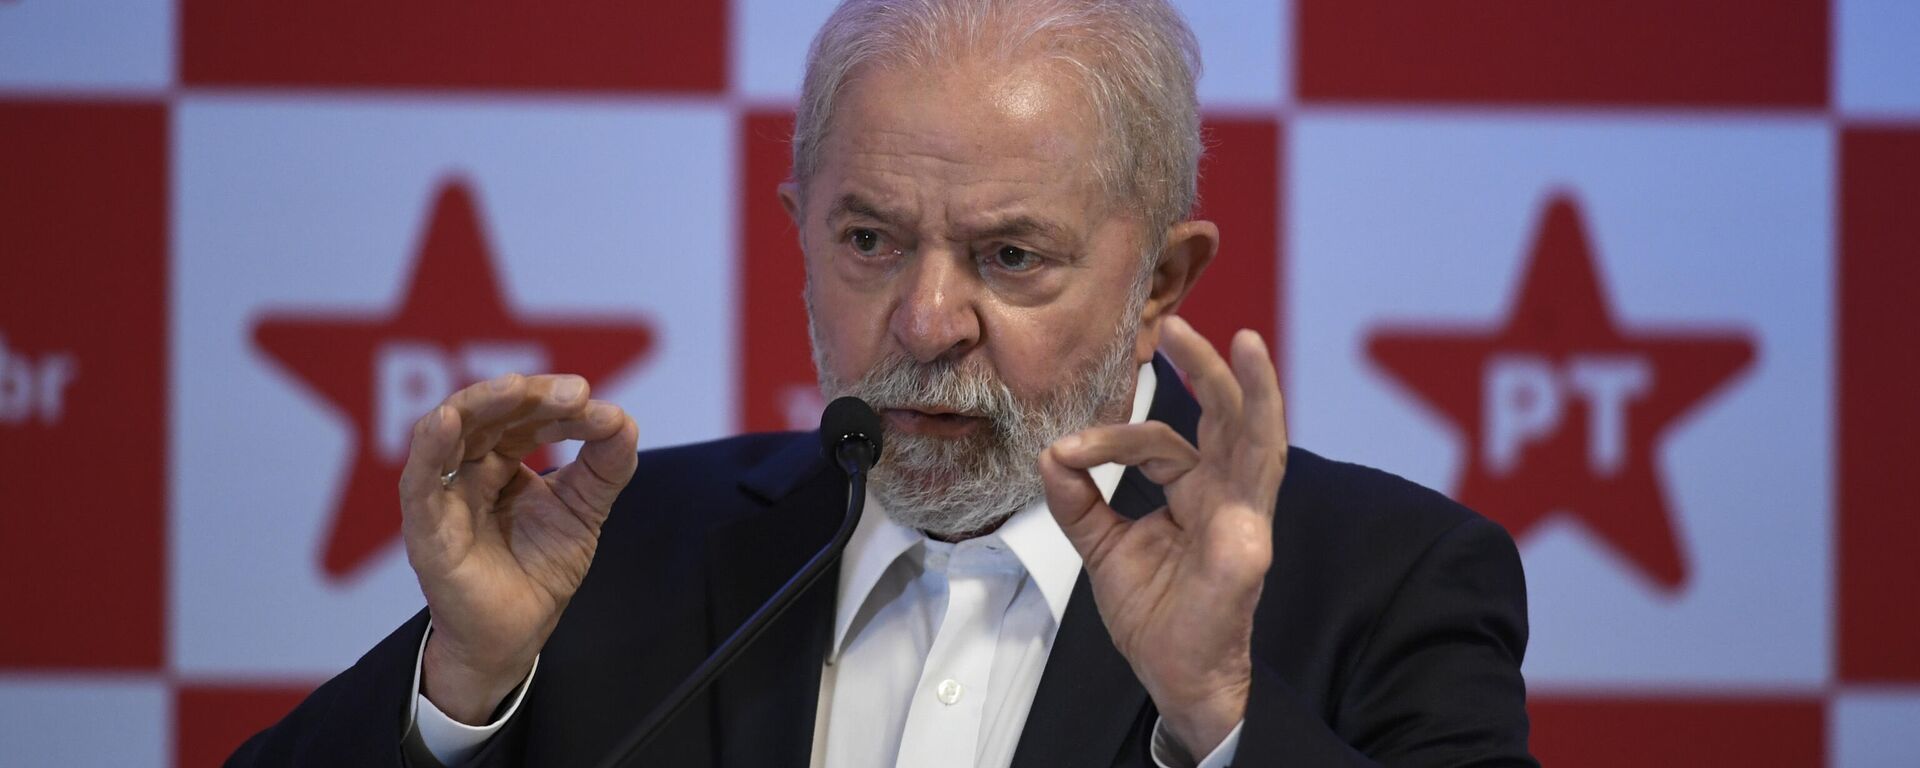 O ex-presidente Luiz Inácio Lula da Silva (PT) durante coletiva de imprensa realizada em Brasília, 8 de outubro de 2021  - Sputnik Brasil, 1920, 26.11.2021